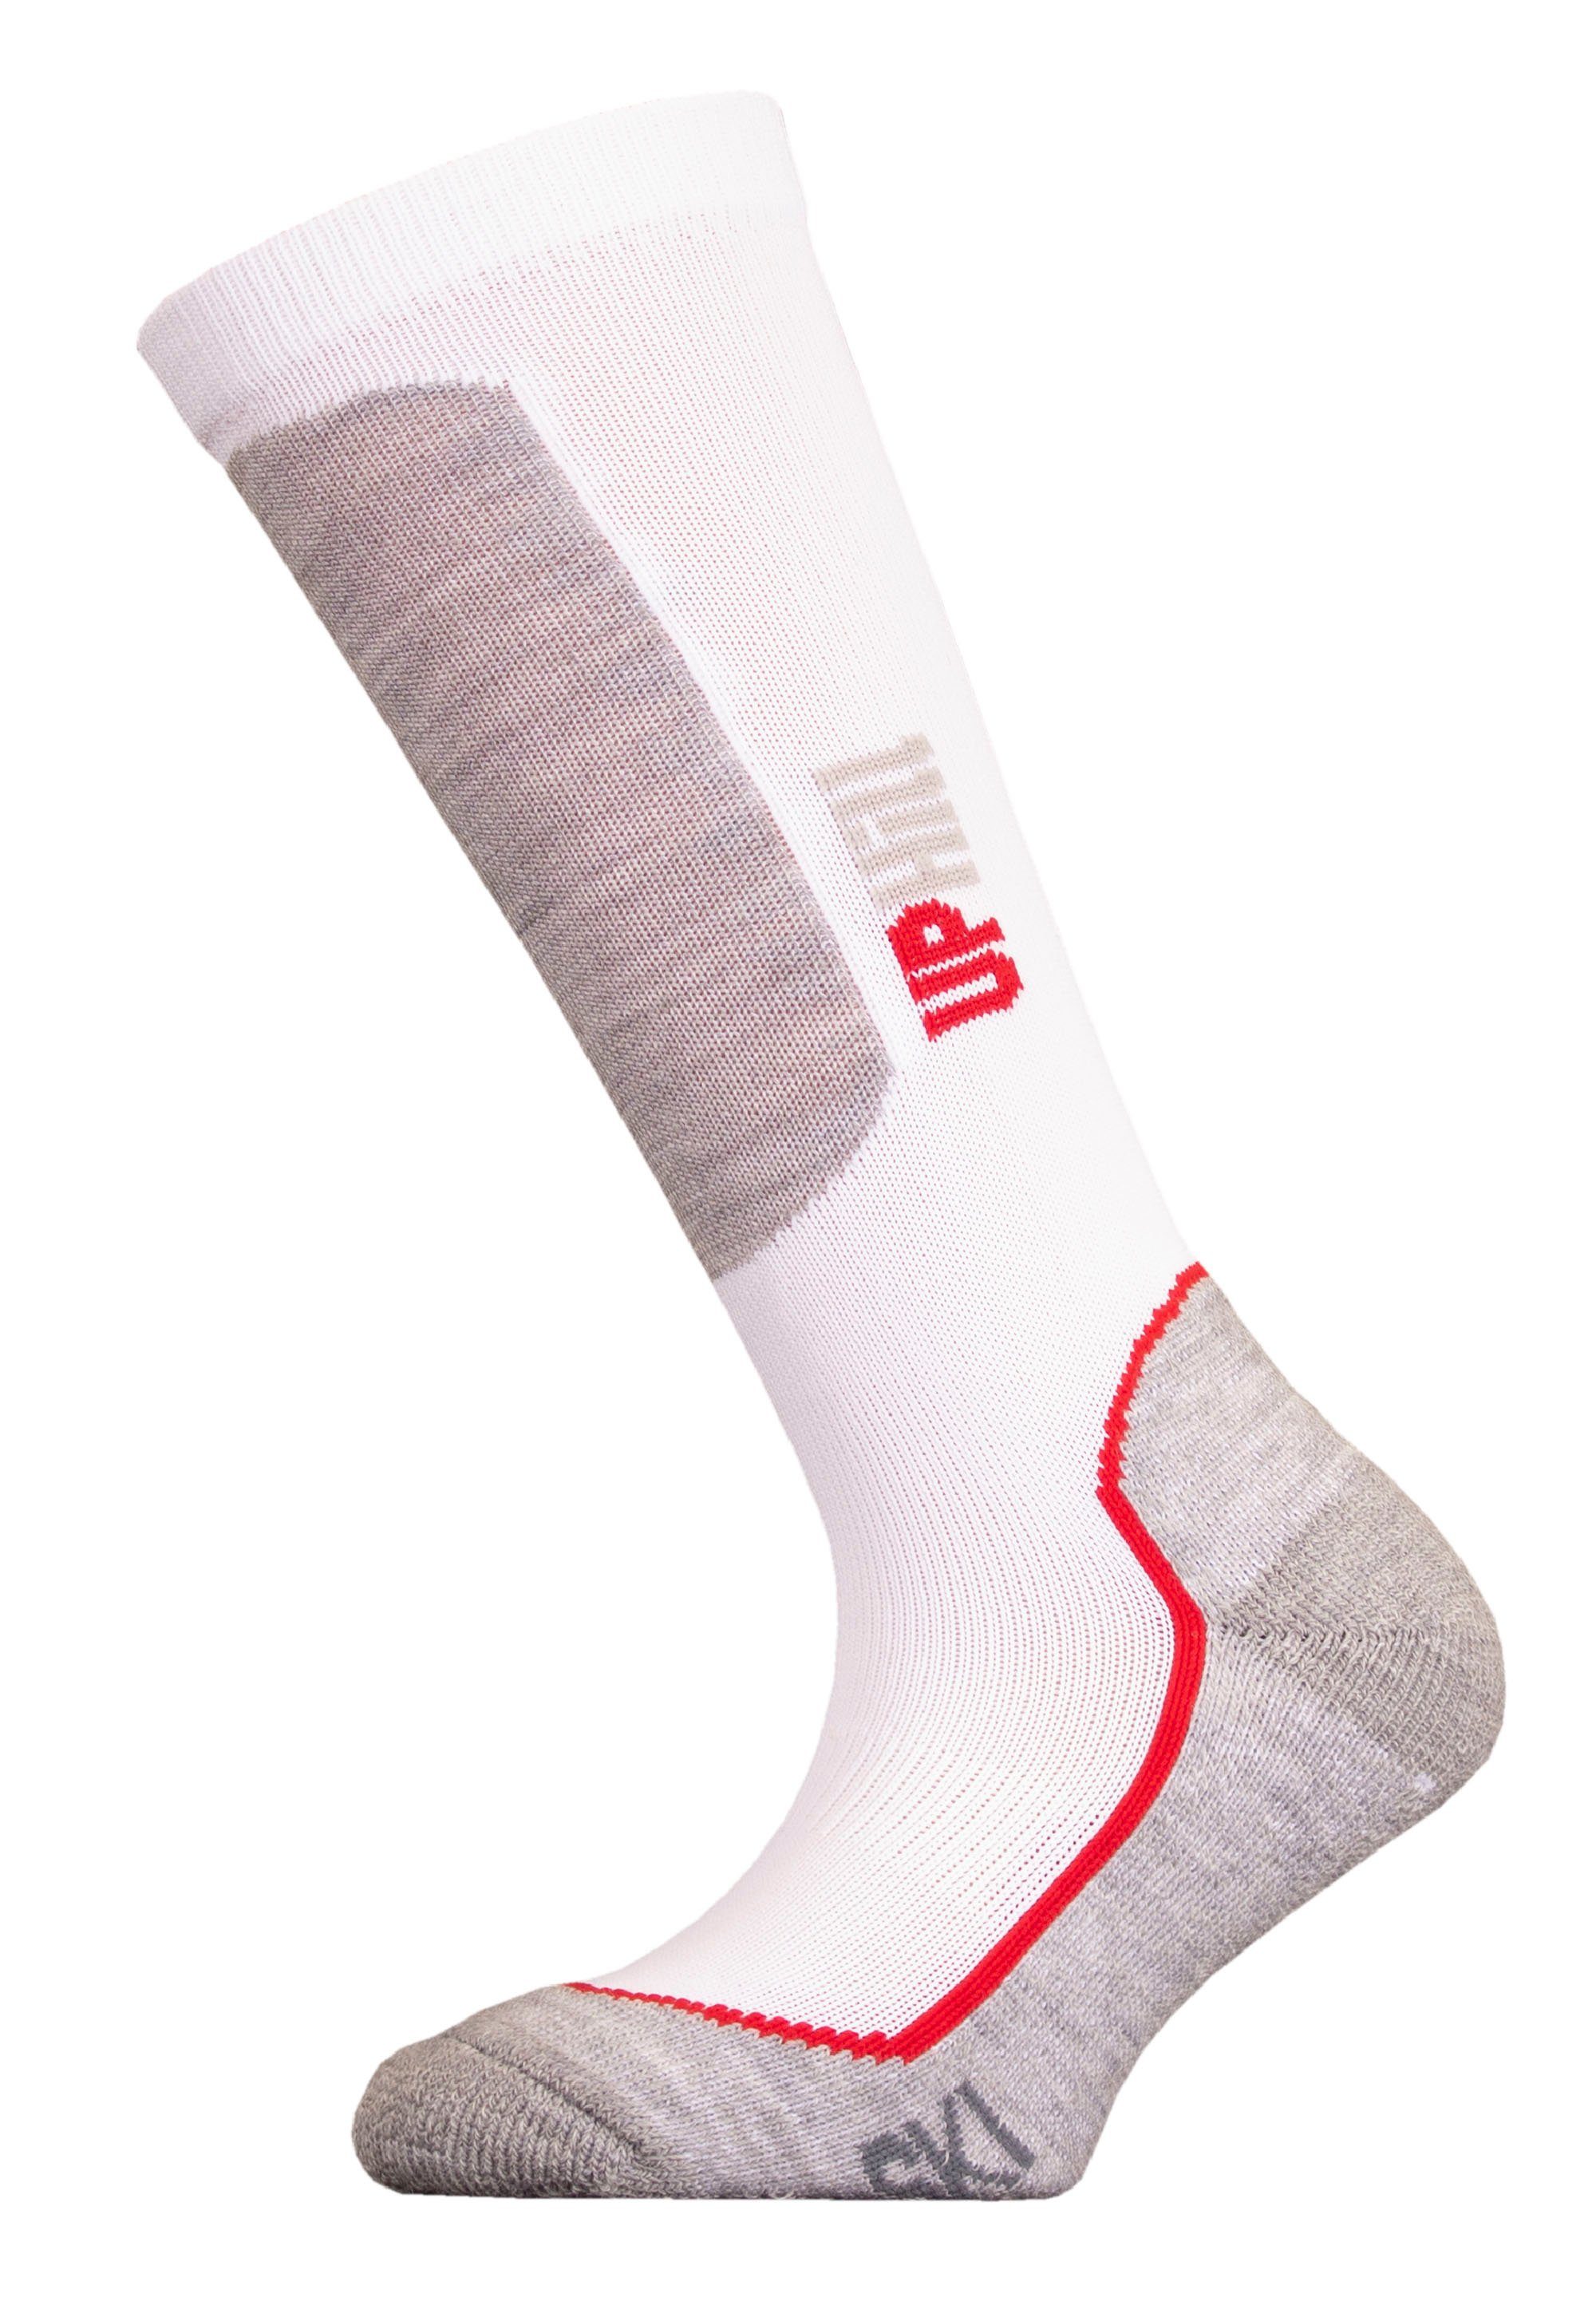 UphillSport Socken (1-Paar) praktischer JR weiß-grau Quick Dry-Technologie HALLA mit